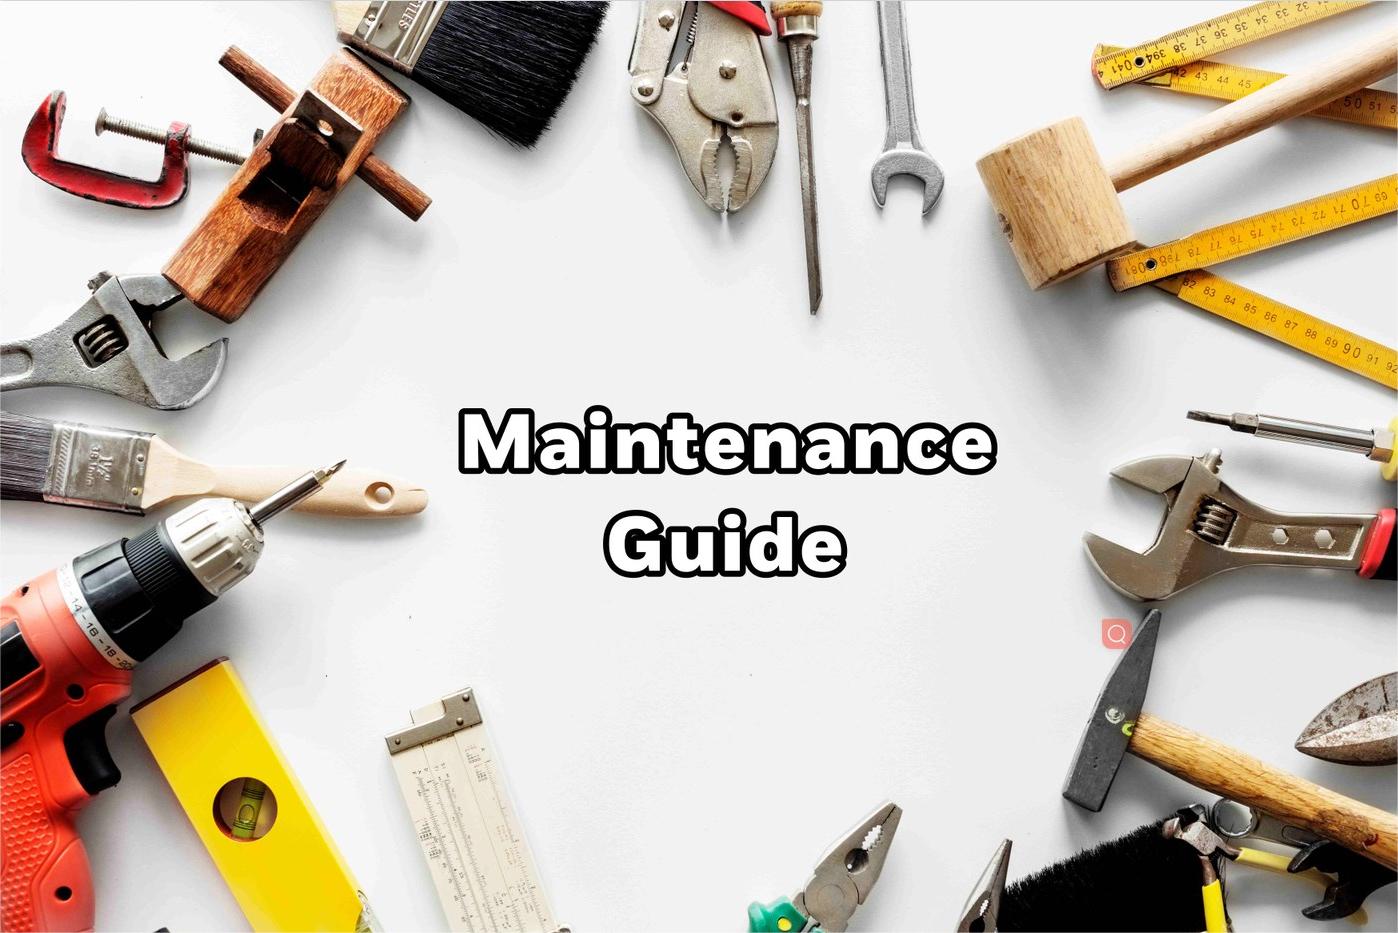 Lamp maintenance guide